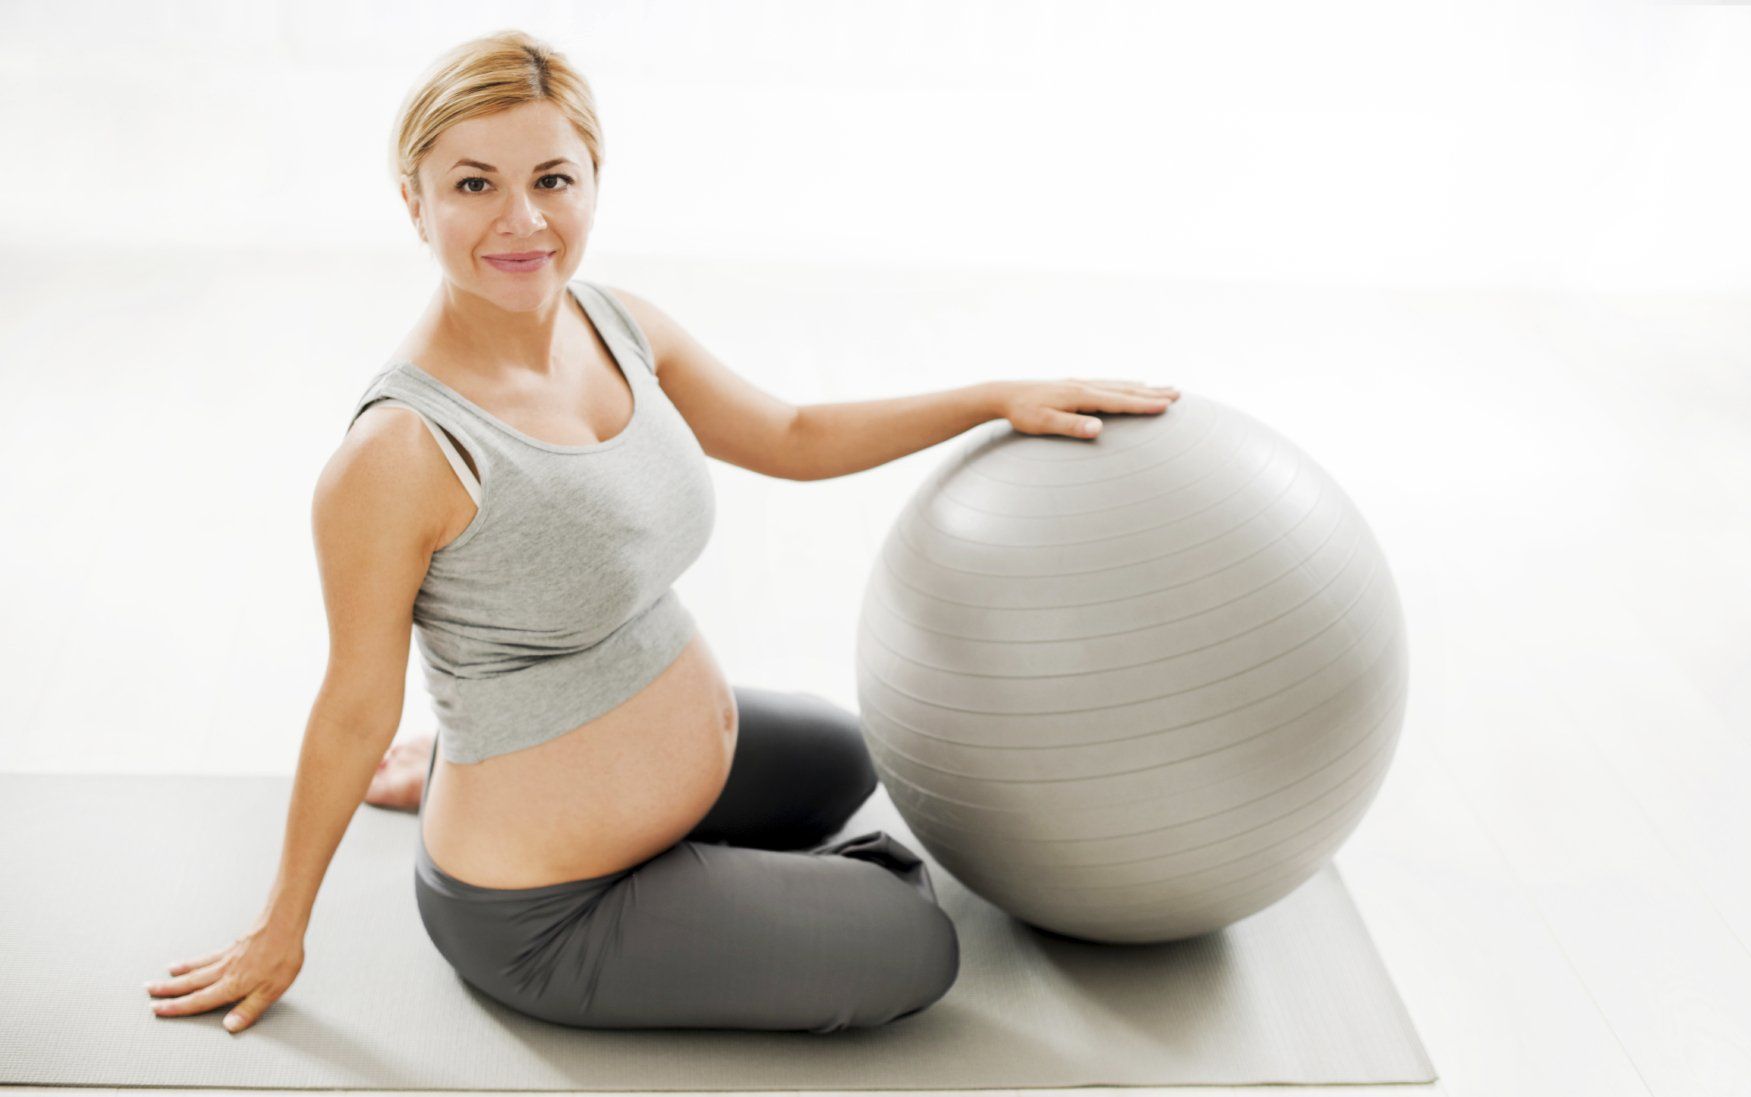 Ejercicio y Embarazo: ¡Mantente Activa y Saludable!